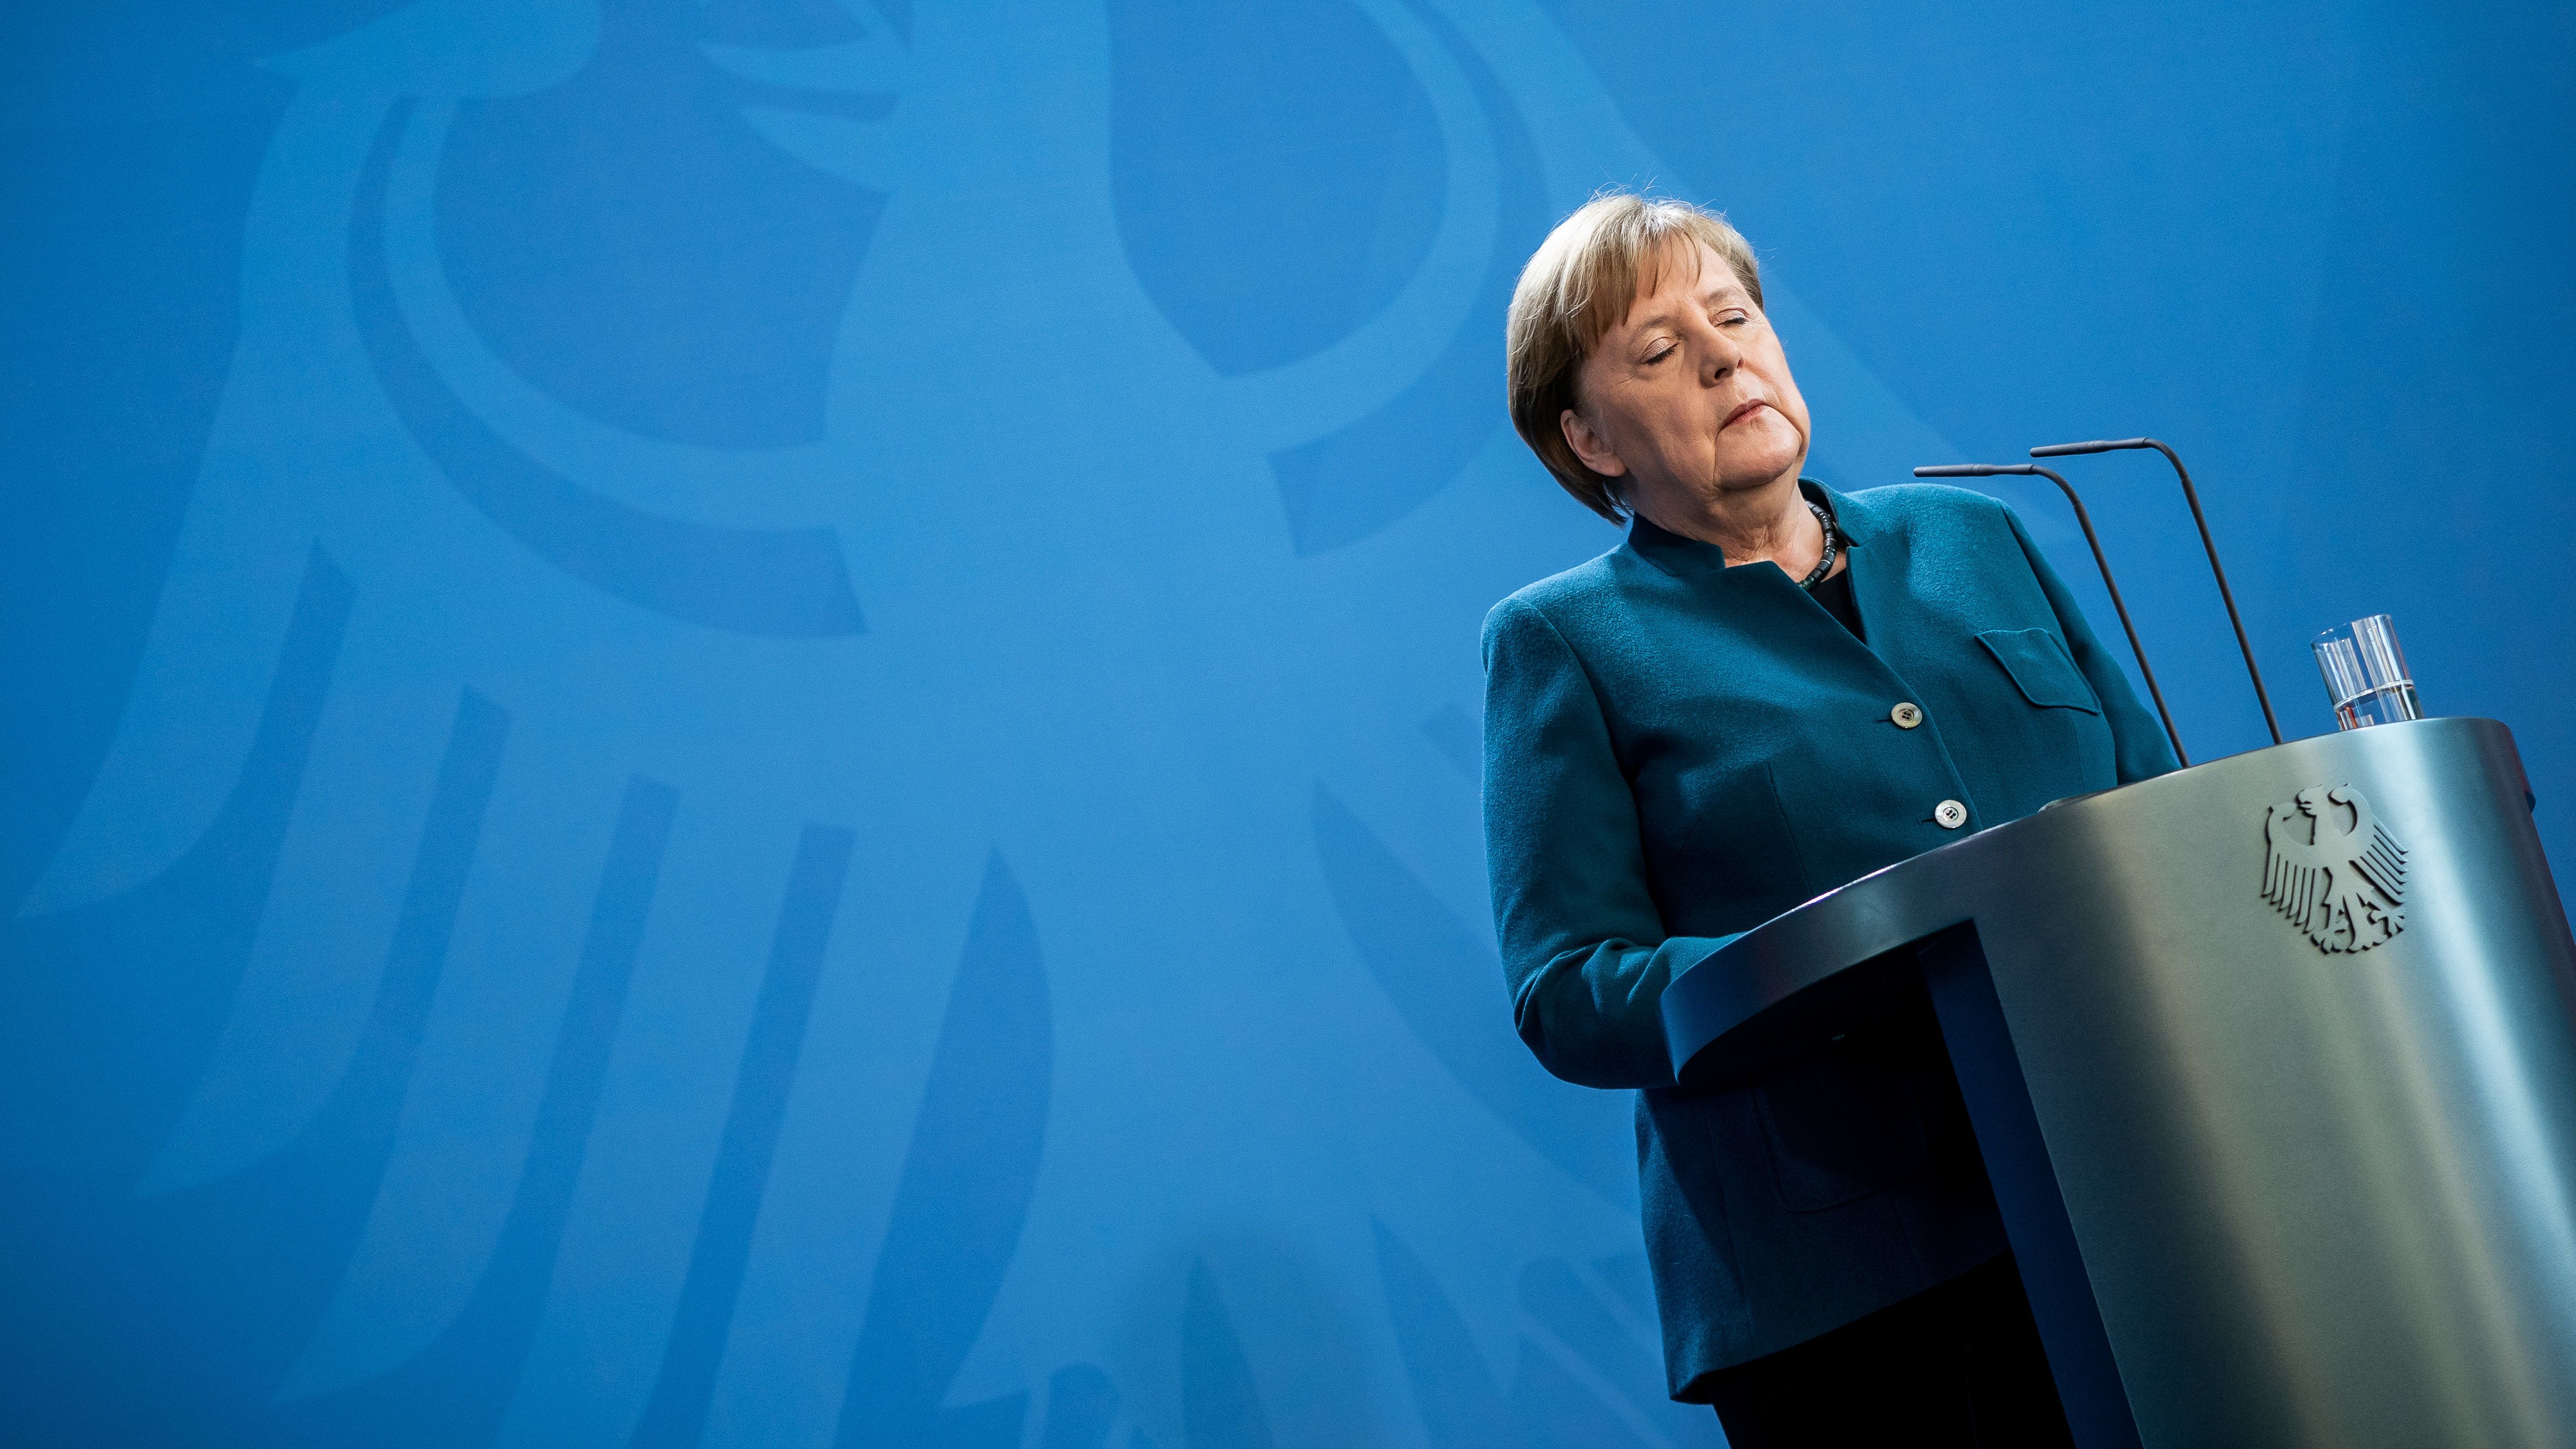 Negatív lett Angela Merkel koronavírus-tesztje